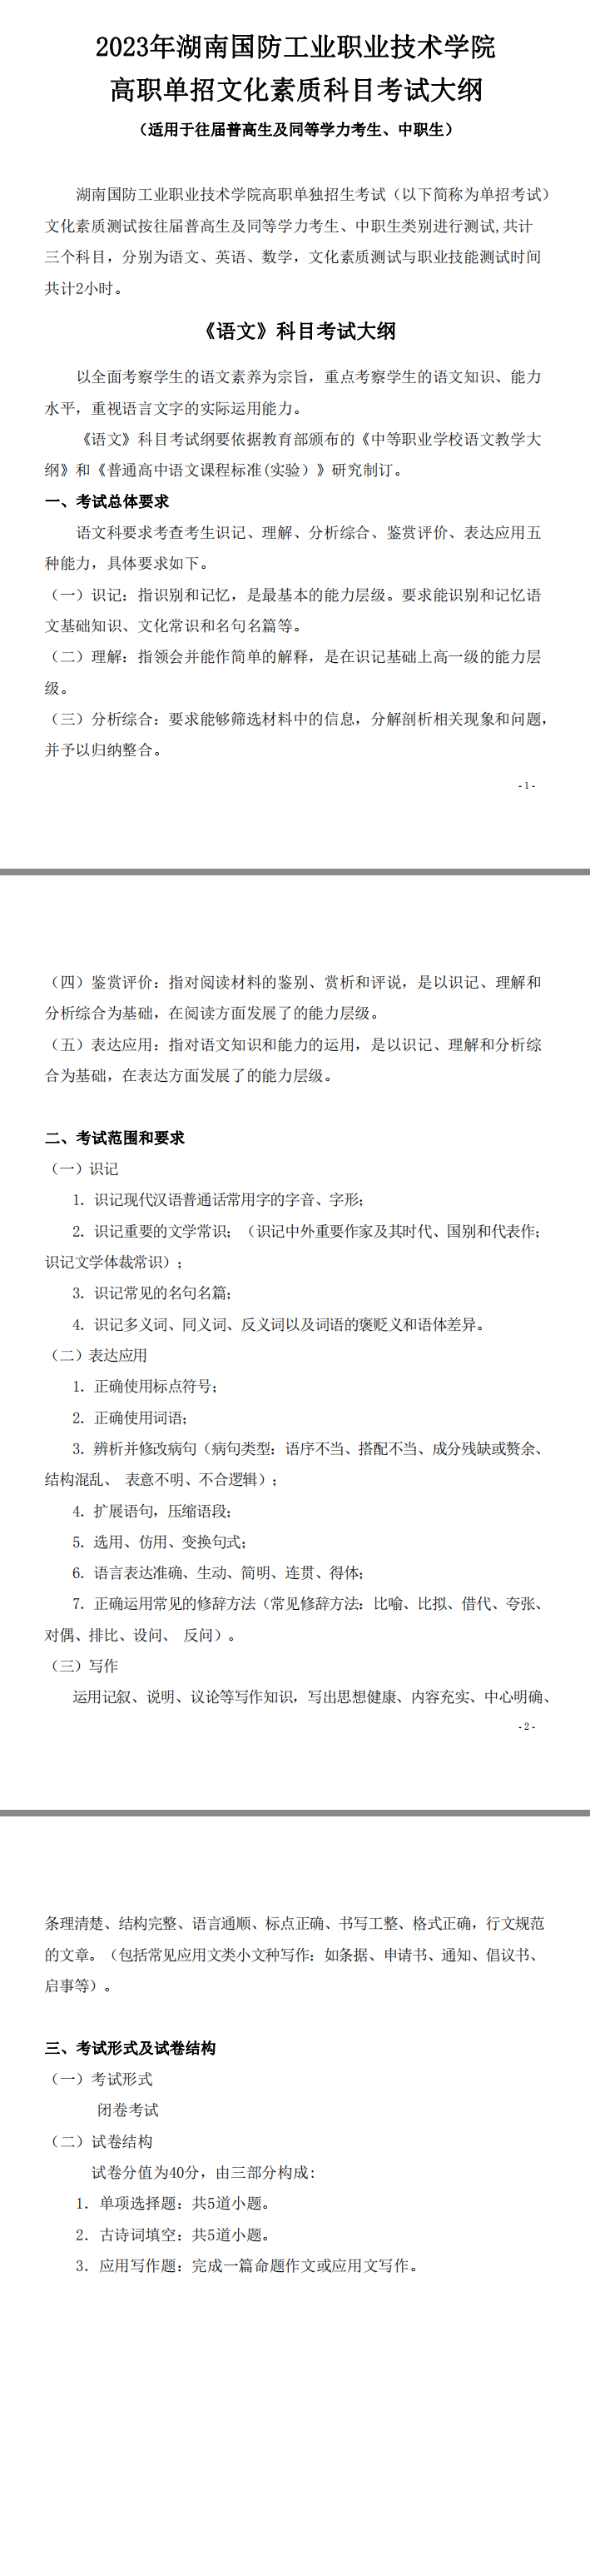 2023年湖南国防工业职业技术学院高职单招文化素质考试大纲